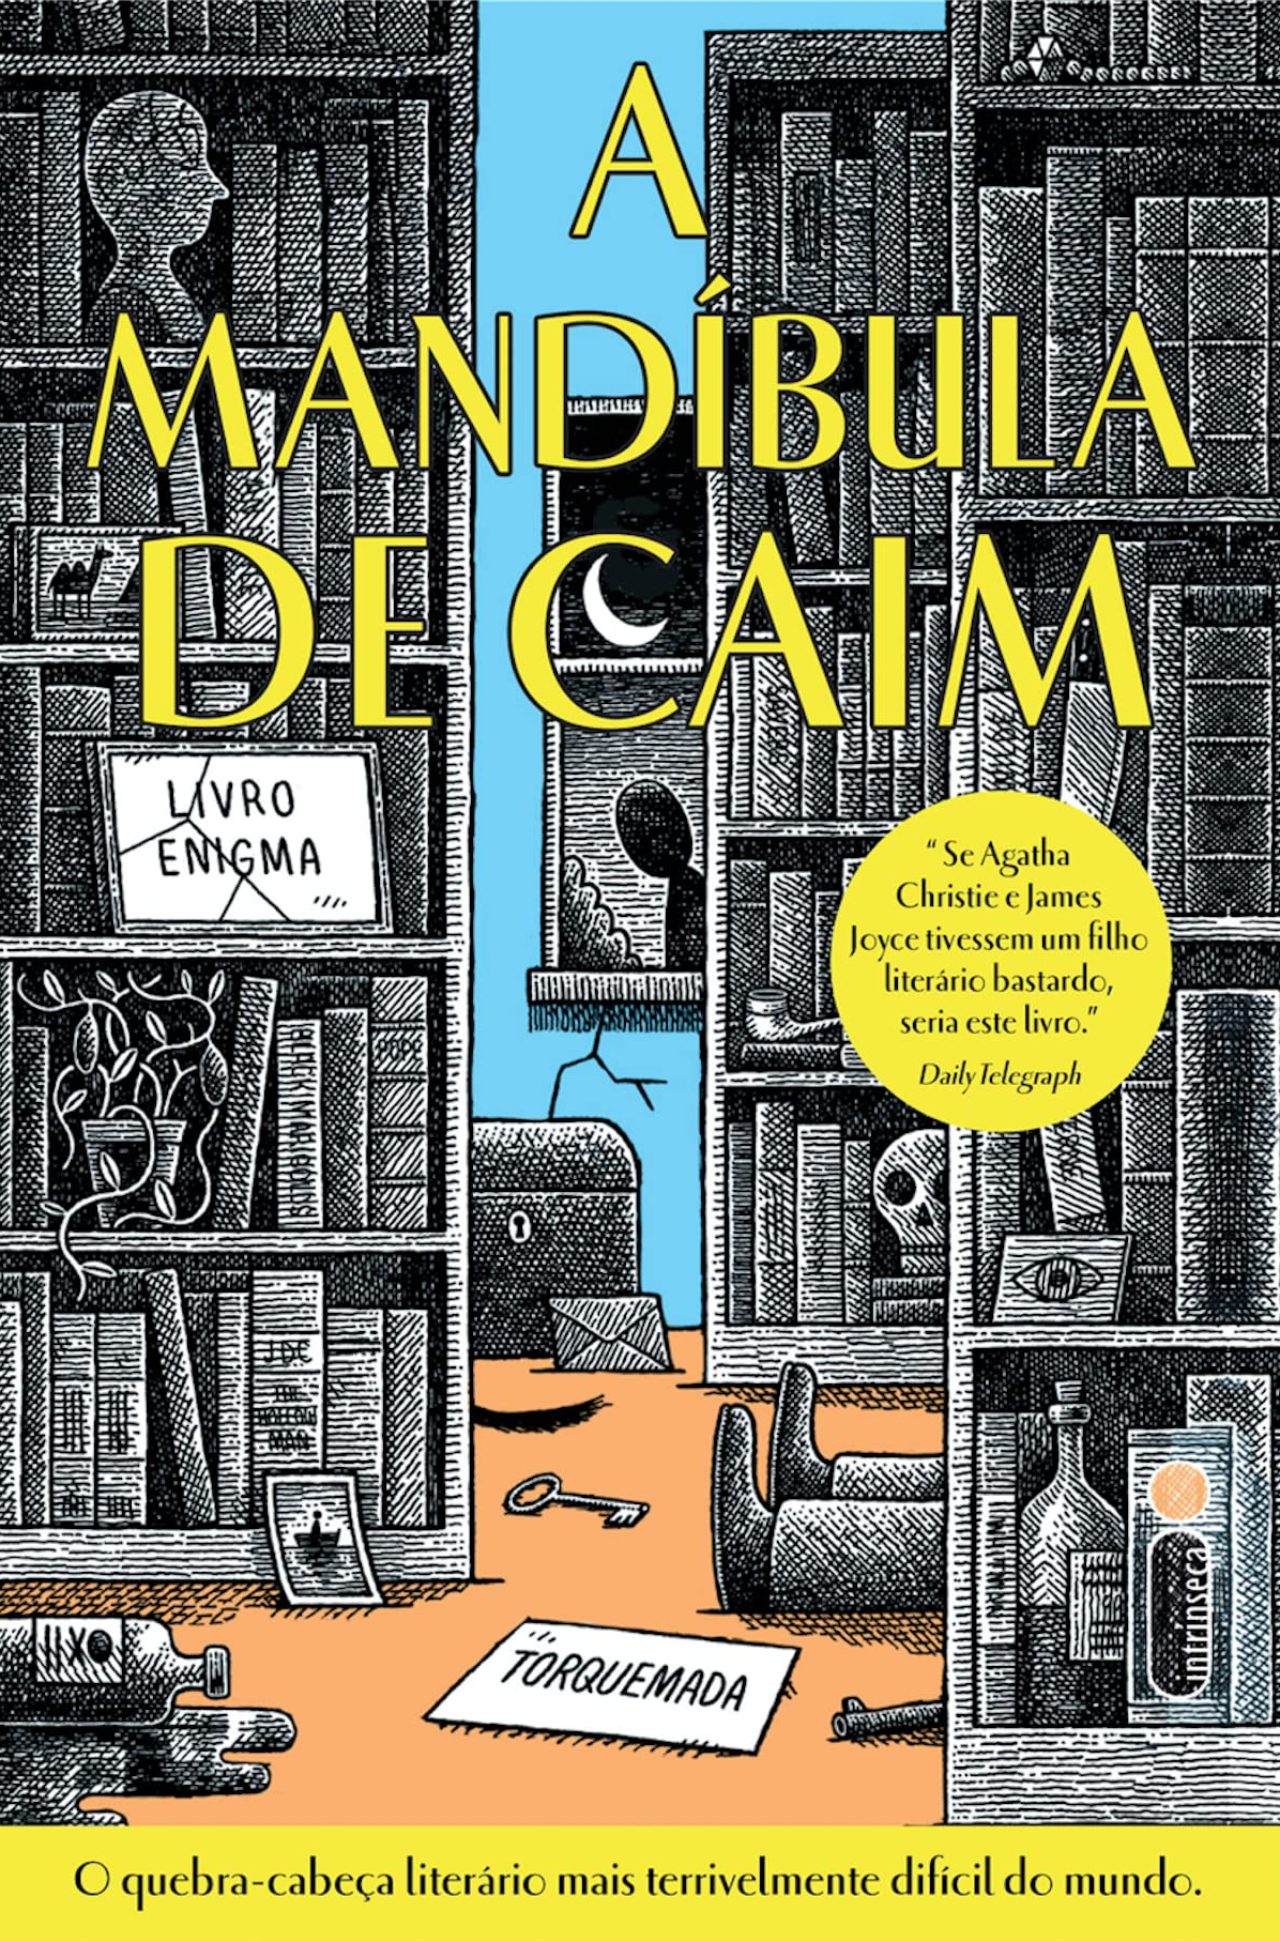 Mandíbula de Caim: O quebra-cabeça literário que fascina gerações